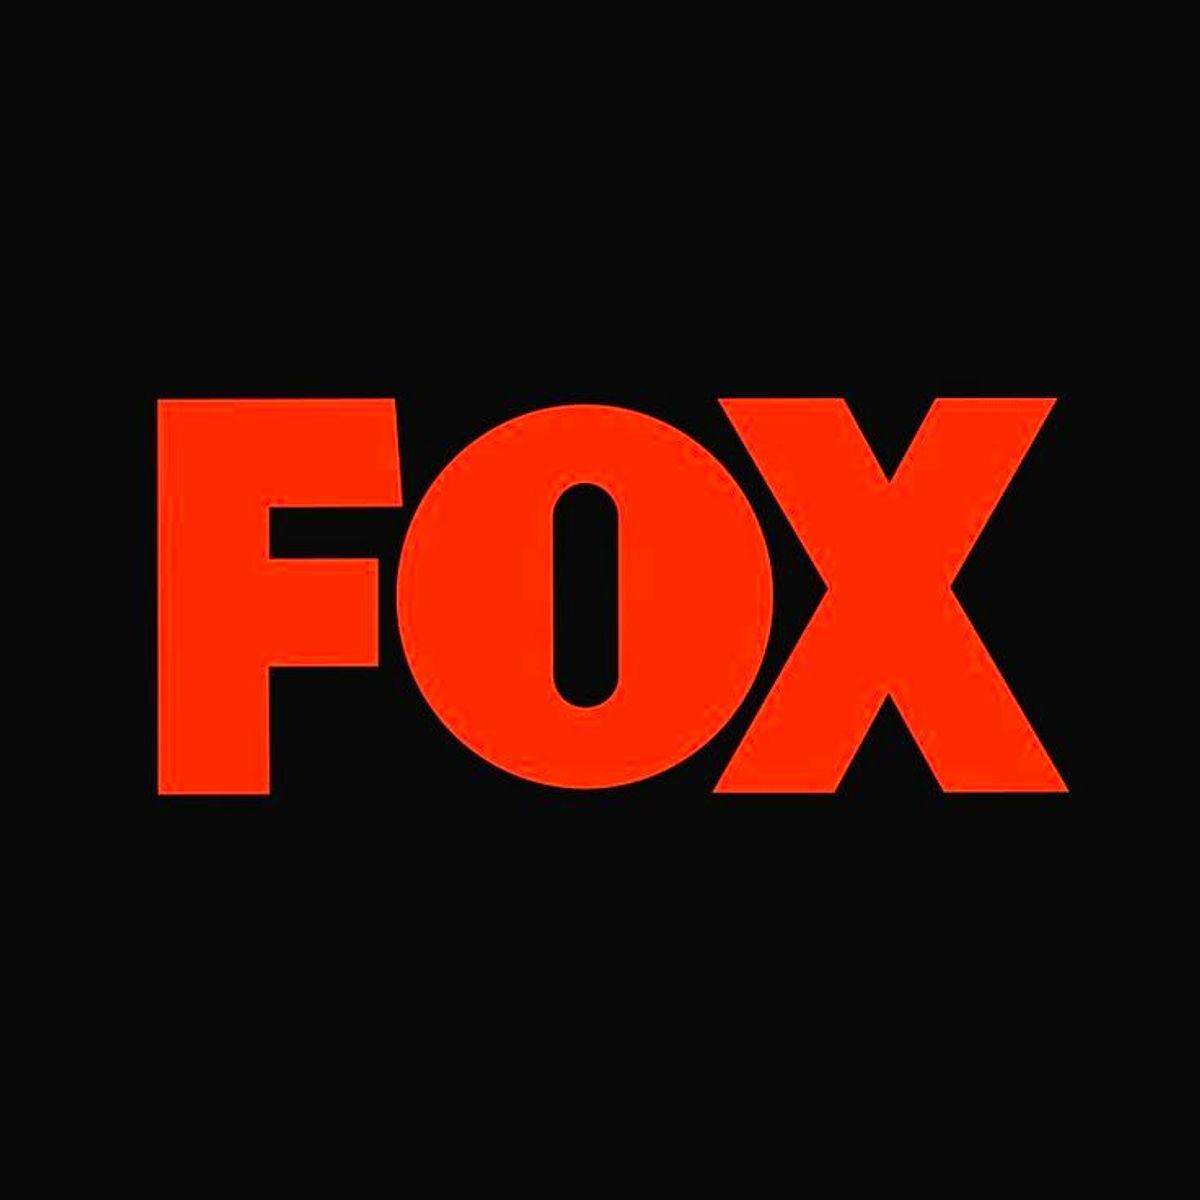 Foks tv canlı. Fox канал. Телекомпания Fox. Fox TV логотип.